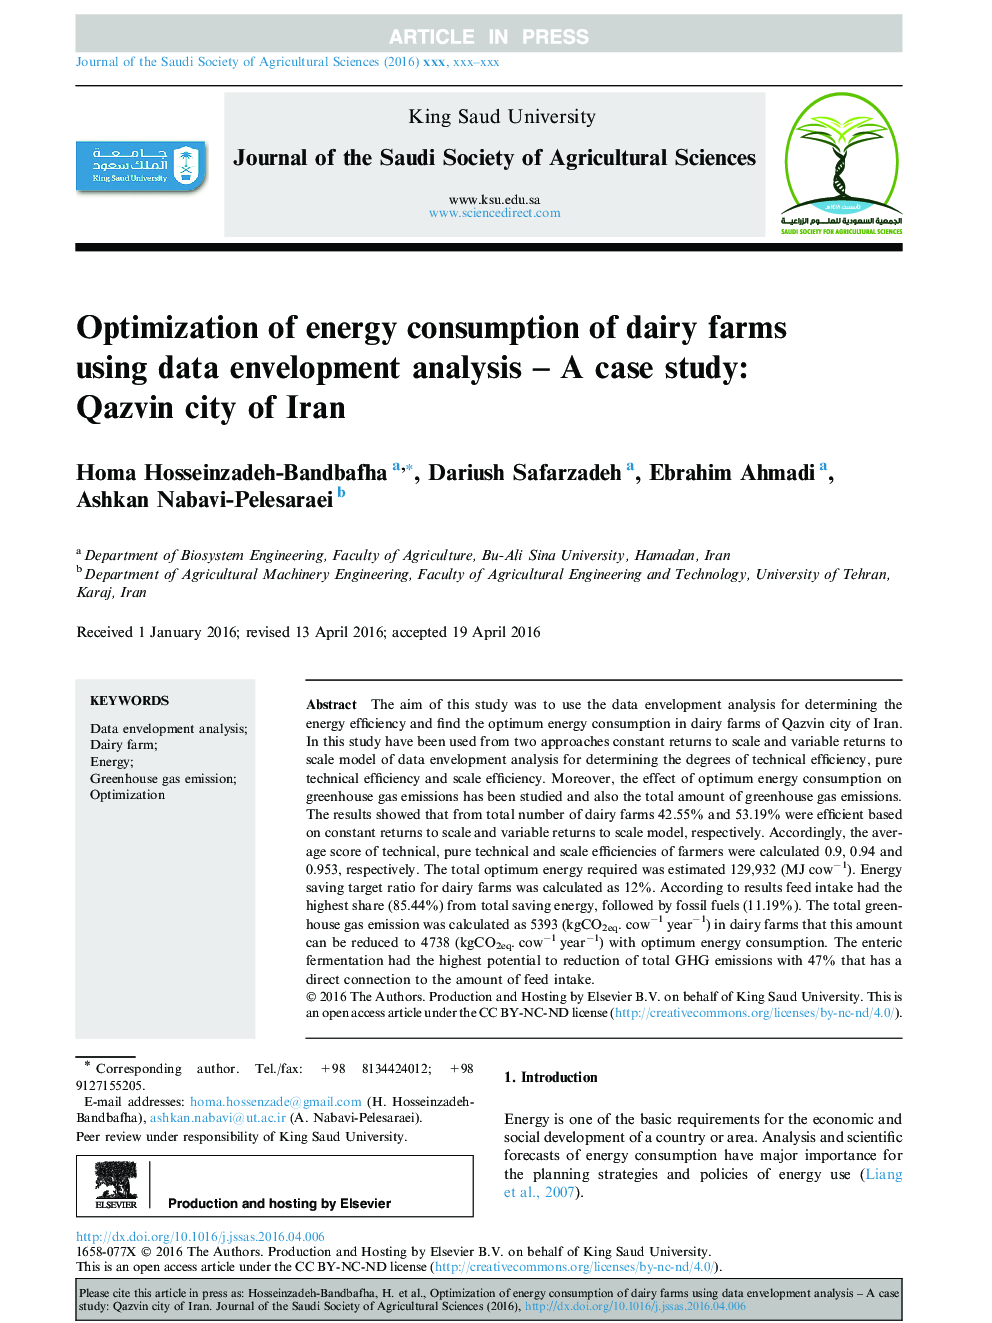 بهینه سازی مصرف انرژی مزارع لبنی با استفاده از تجزیه و تحلیل پوششی داده ها - مطالعه موردی: شهر قزوین 